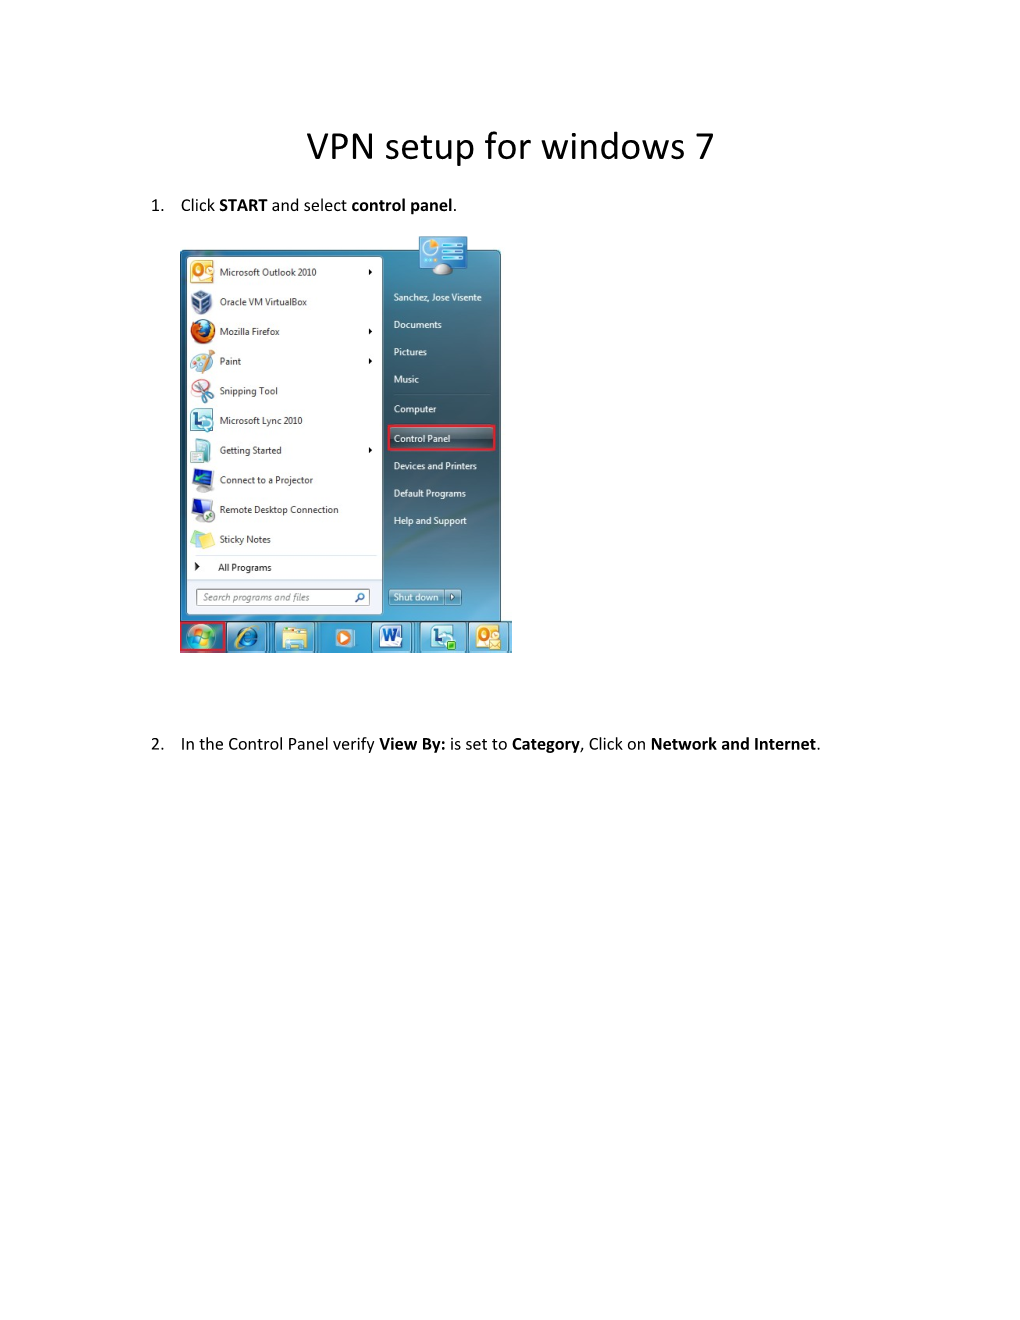 VPN Setup for Windows 7